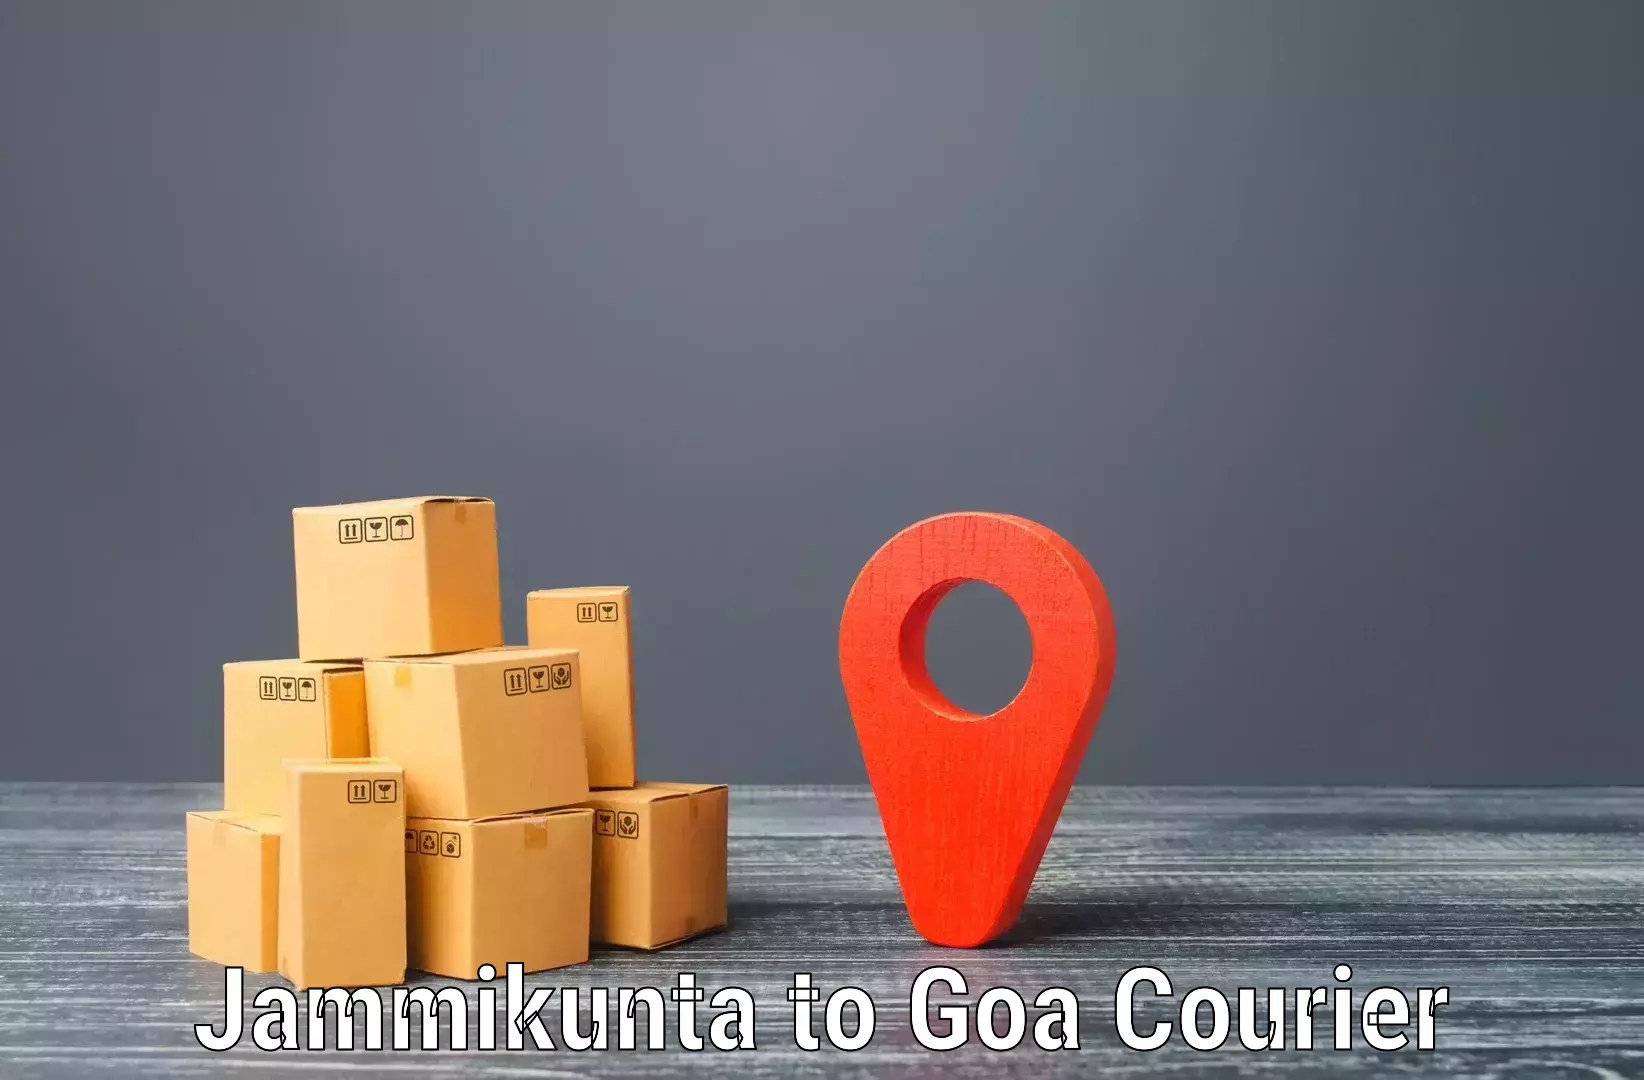 Multi-city courier Jammikunta to Ponda